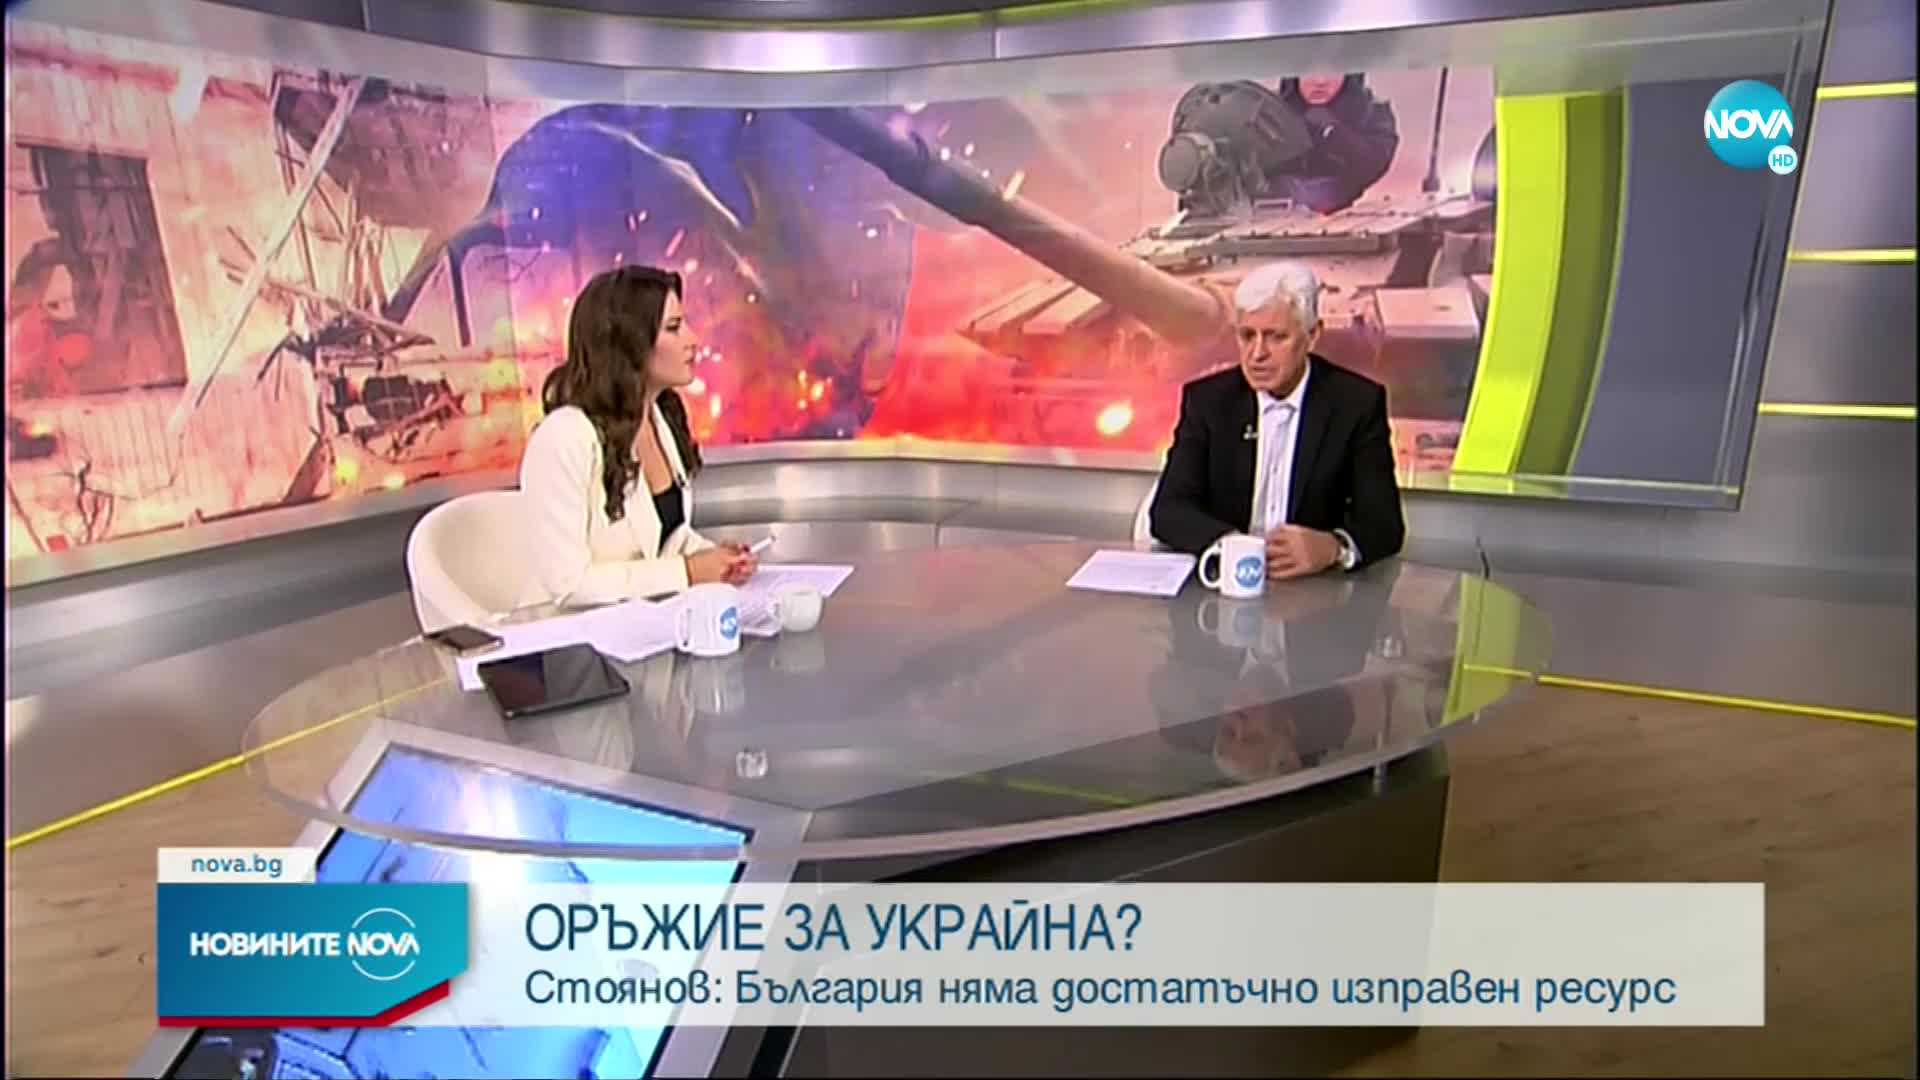 Димитър Стоянов: България няма много изправно оръжие. Ако го дарим - какво ще правим?